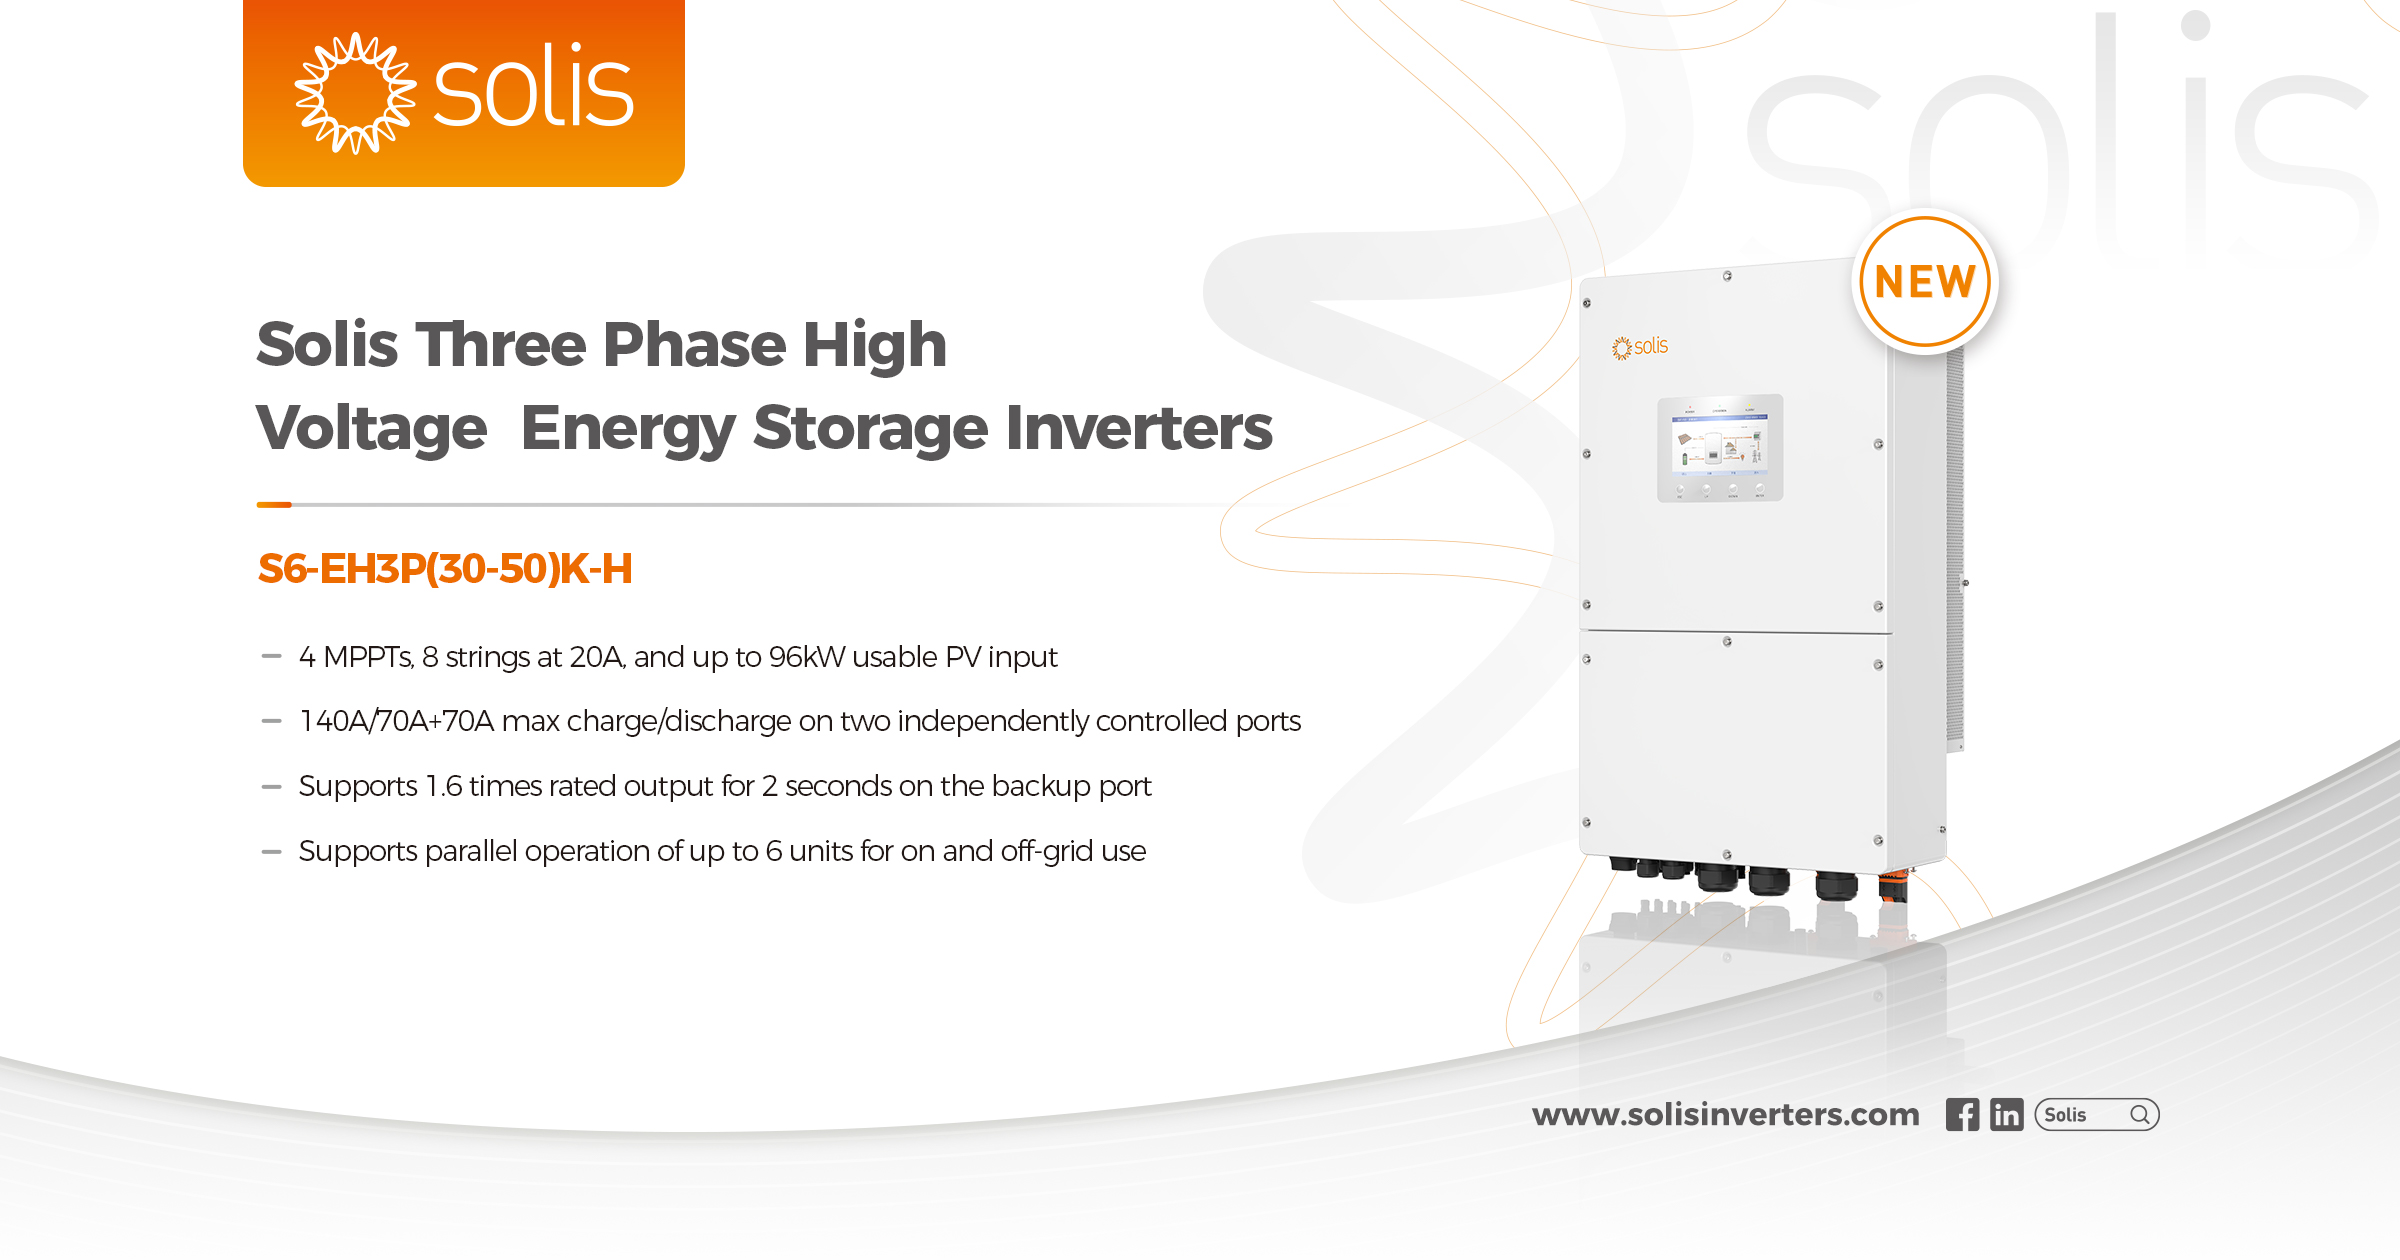 C&I Energy Storage Inverters